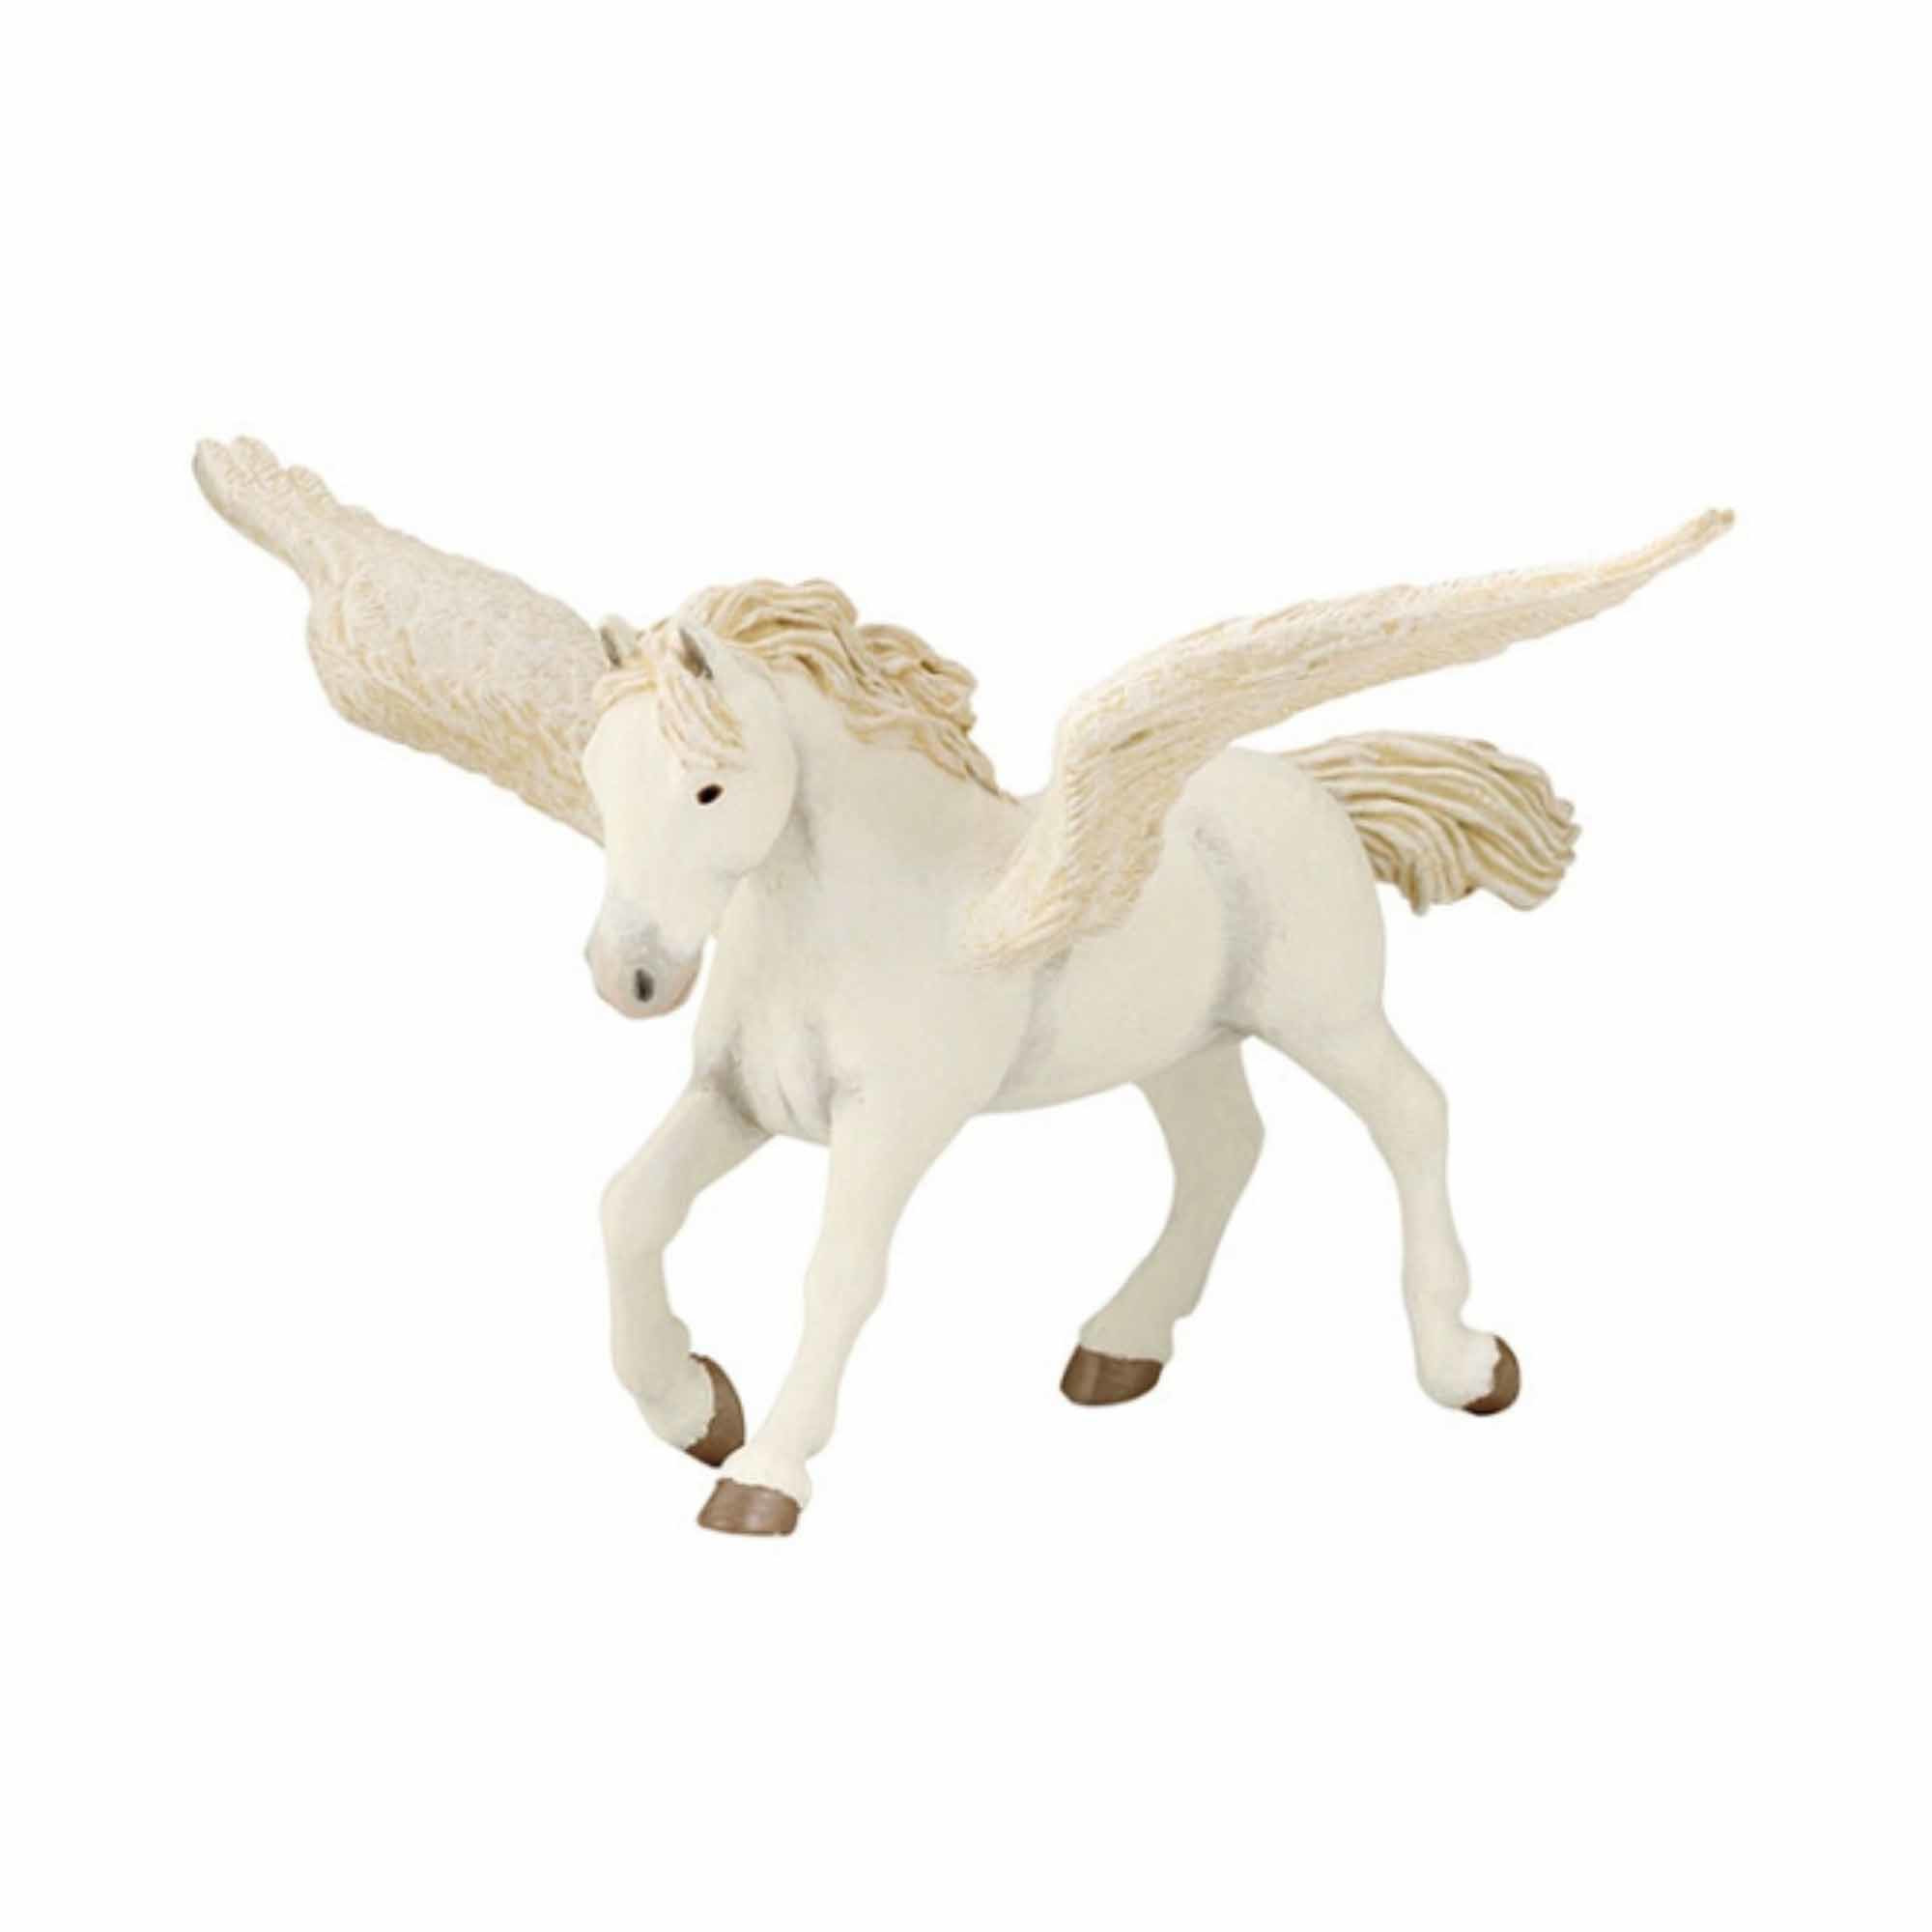 Plastic speelfiguur pegasus paard met vleugels 16,5 cm